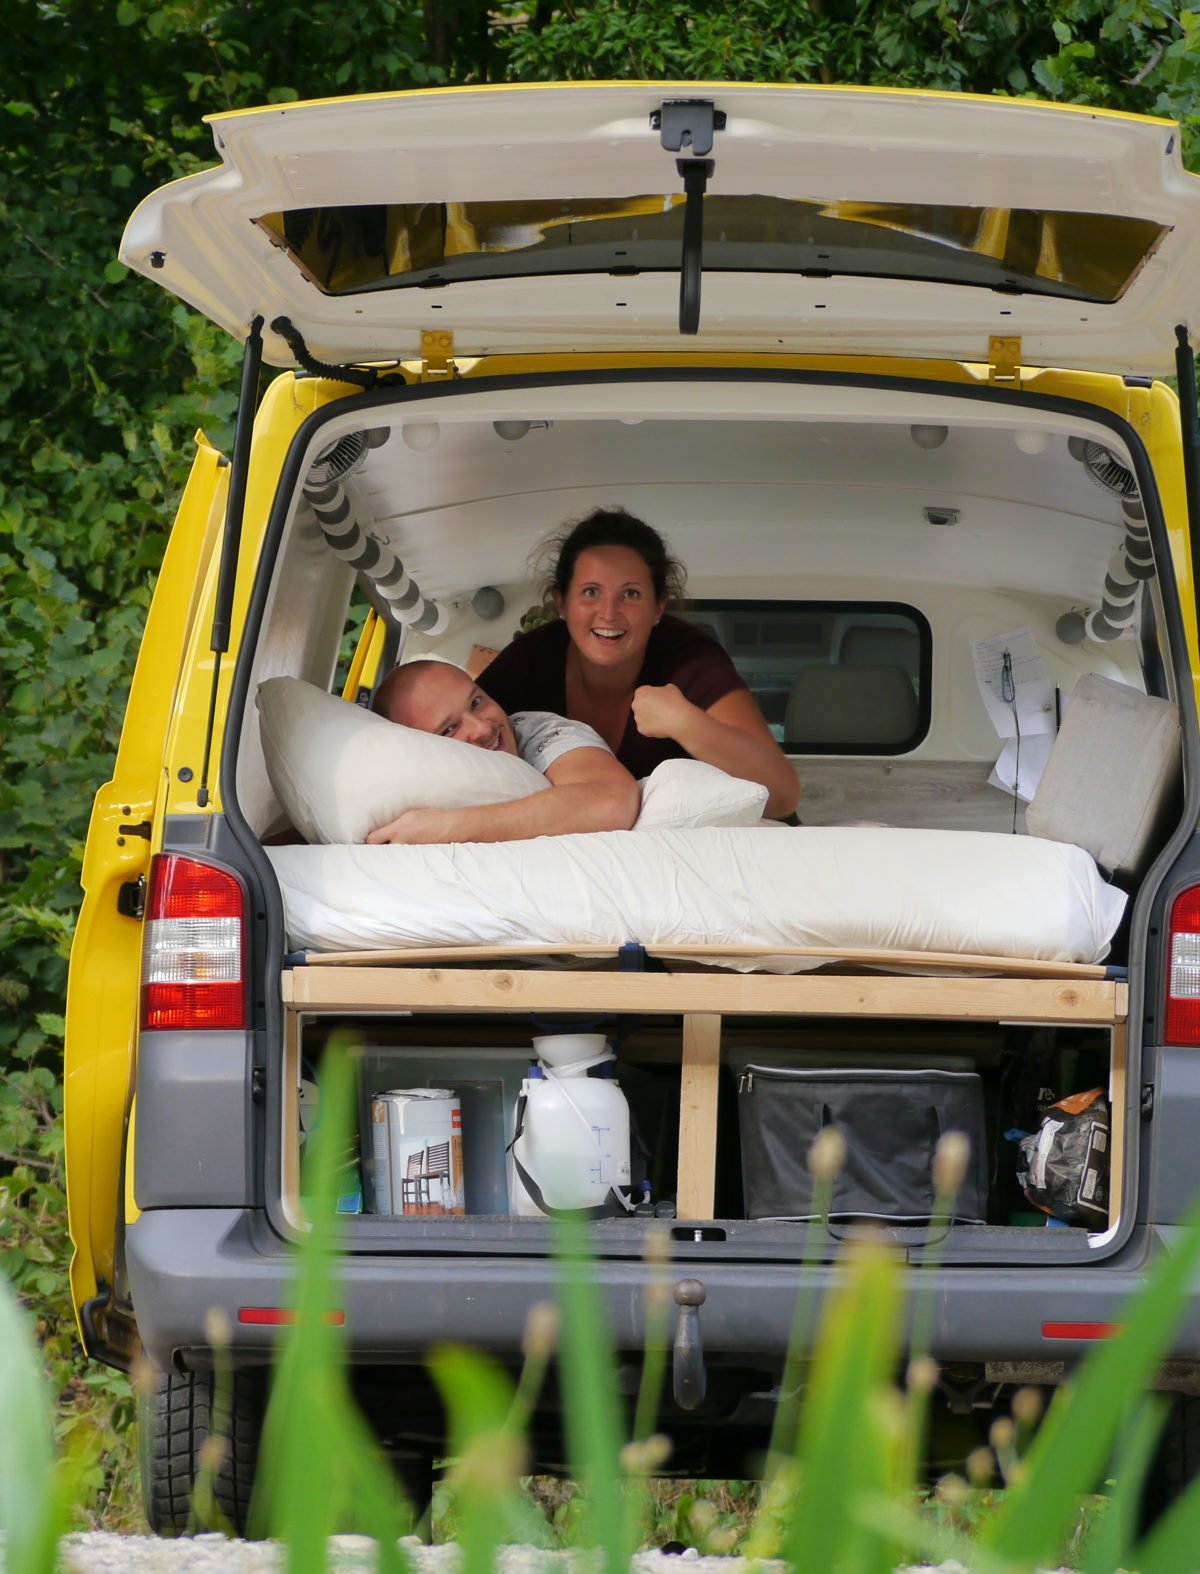 VW T5 Heckauszug - Travel Smarter  Vw t5, Camping ausbau, Kastenwagen in  wohnmobil umbau